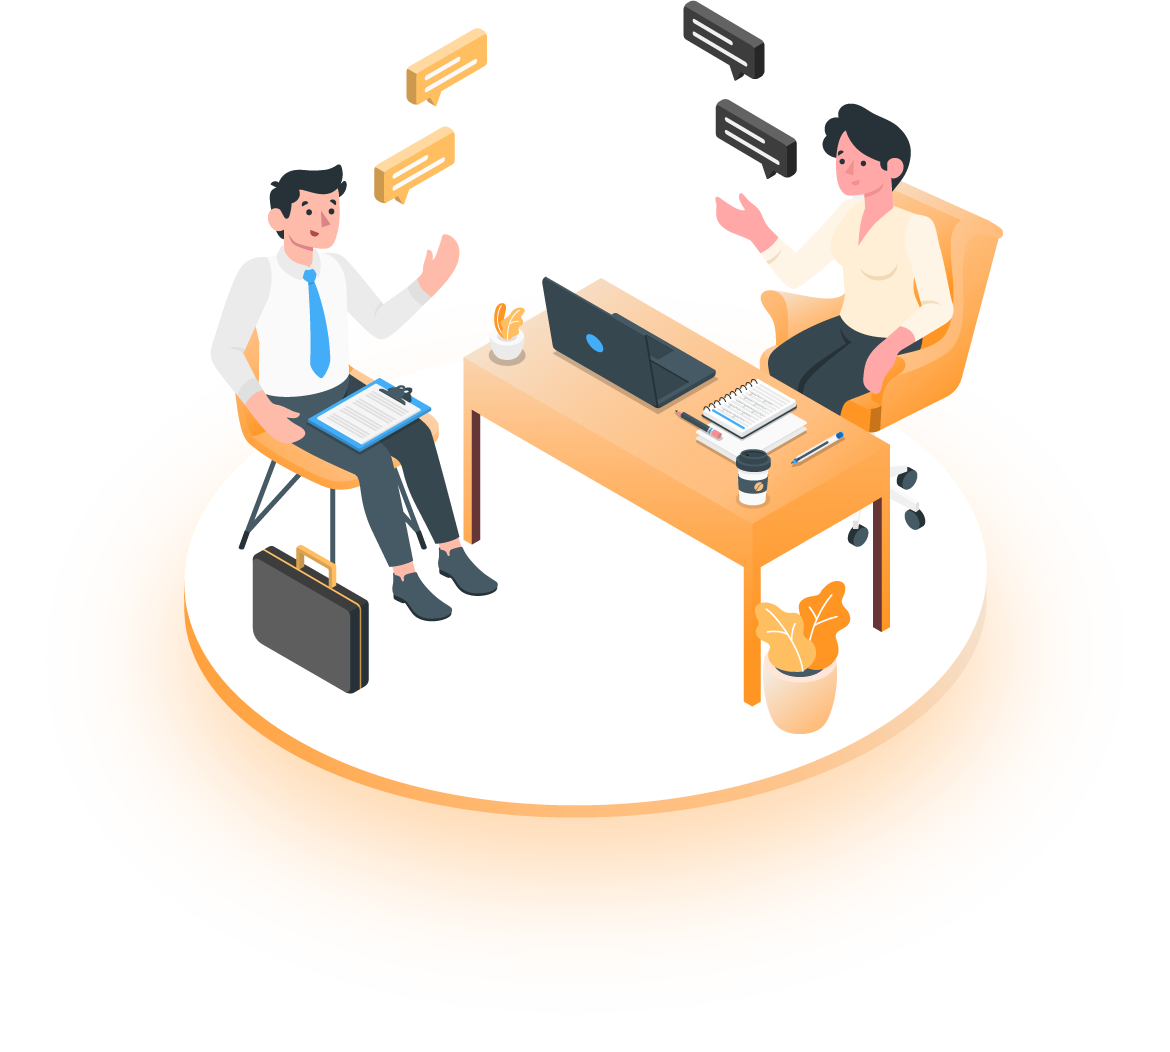 illustration vectorielle en isométrie de deux personnes qui discutent autour d'un bureau de travail, avec un ordinateur.